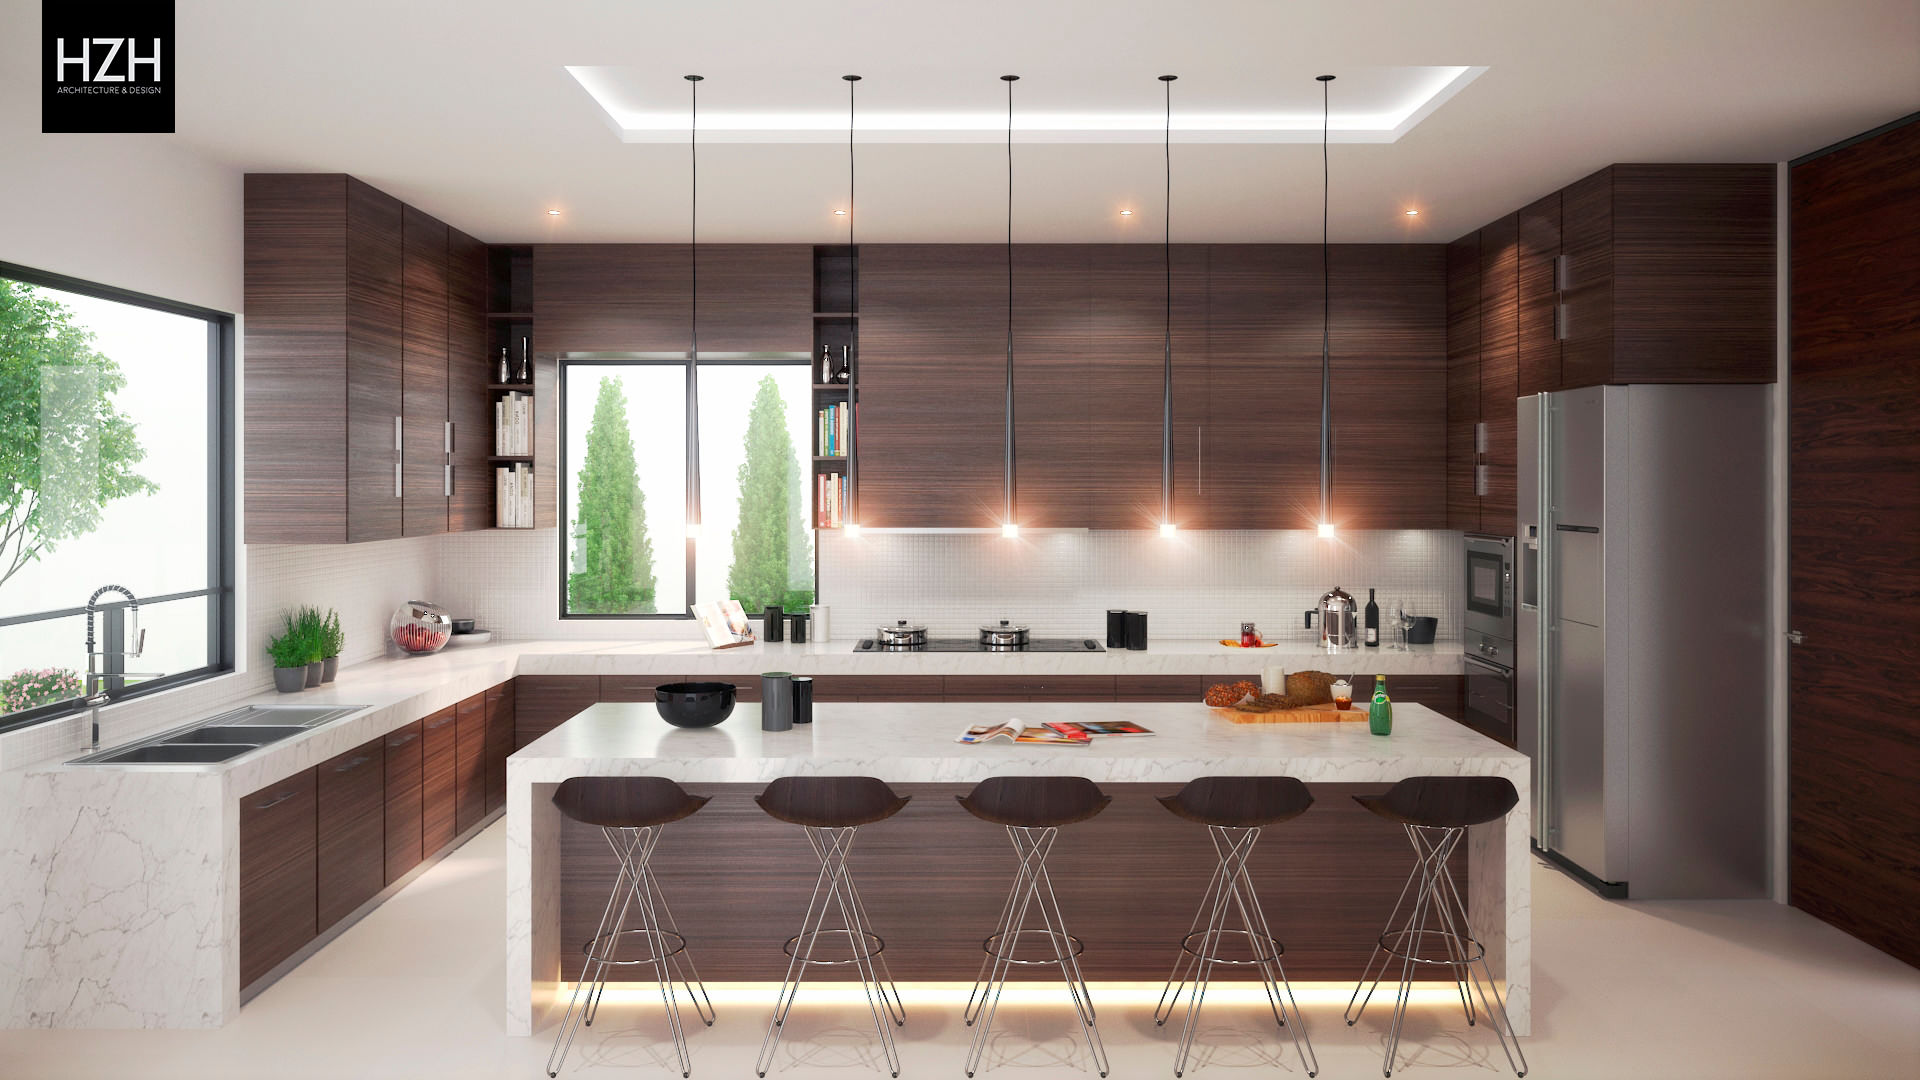 Residencia Contry La Silla, HZH Arquitectura & Diseño HZH Arquitectura & Diseño モダンな キッチン